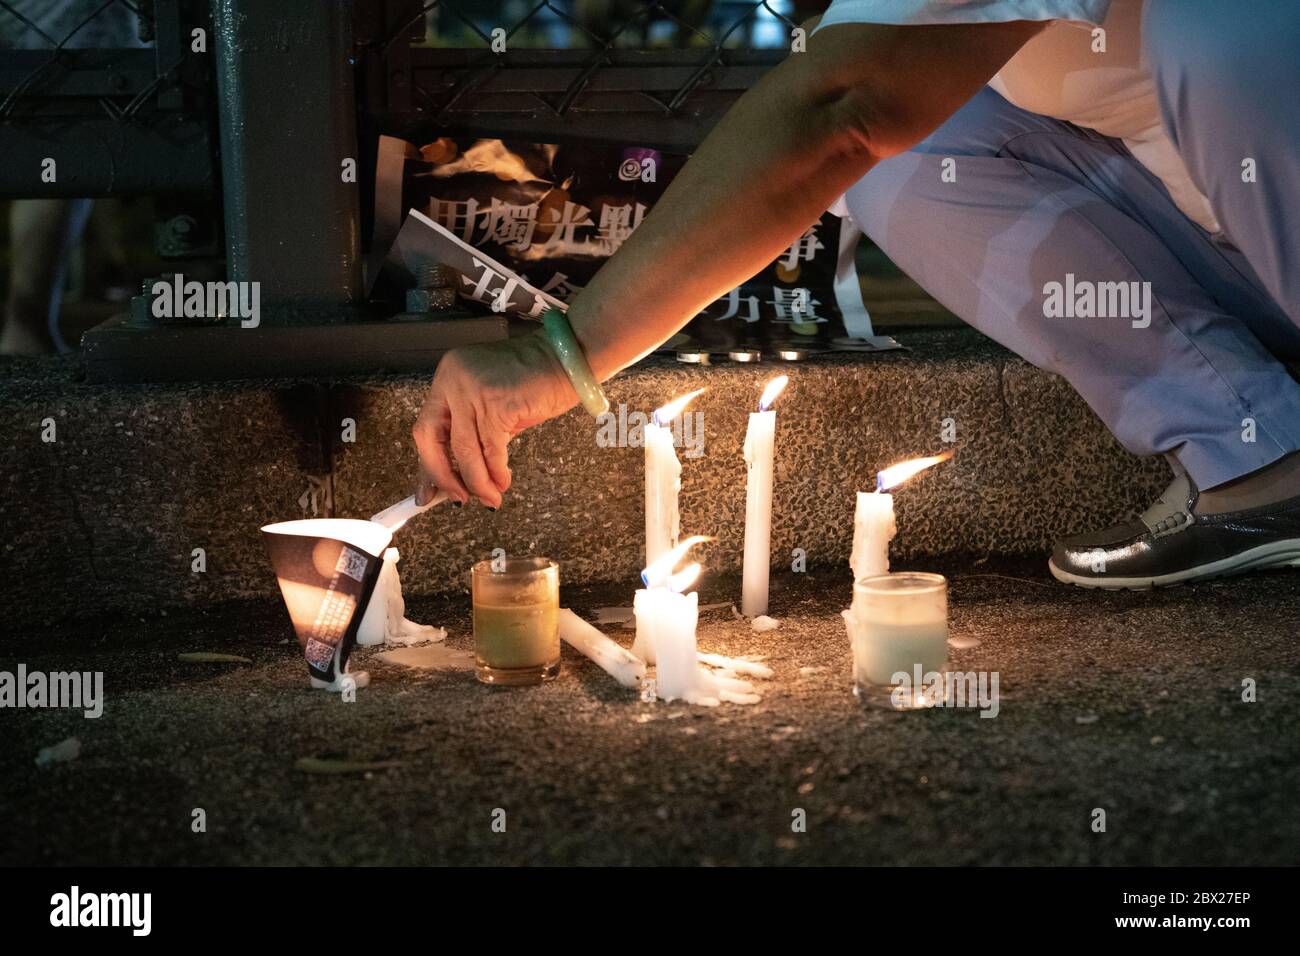 Causeway Bay, Hong Kong. 04, junio de 2020. Las luces activistas conmemoran las protestas estudiantiles en China en la Plaza Tiananmen, a pesar de las prohibiciones de las conmemoraciones en China y Hong Kong. © Danny Tsai / Alamy Live News Foto de stock